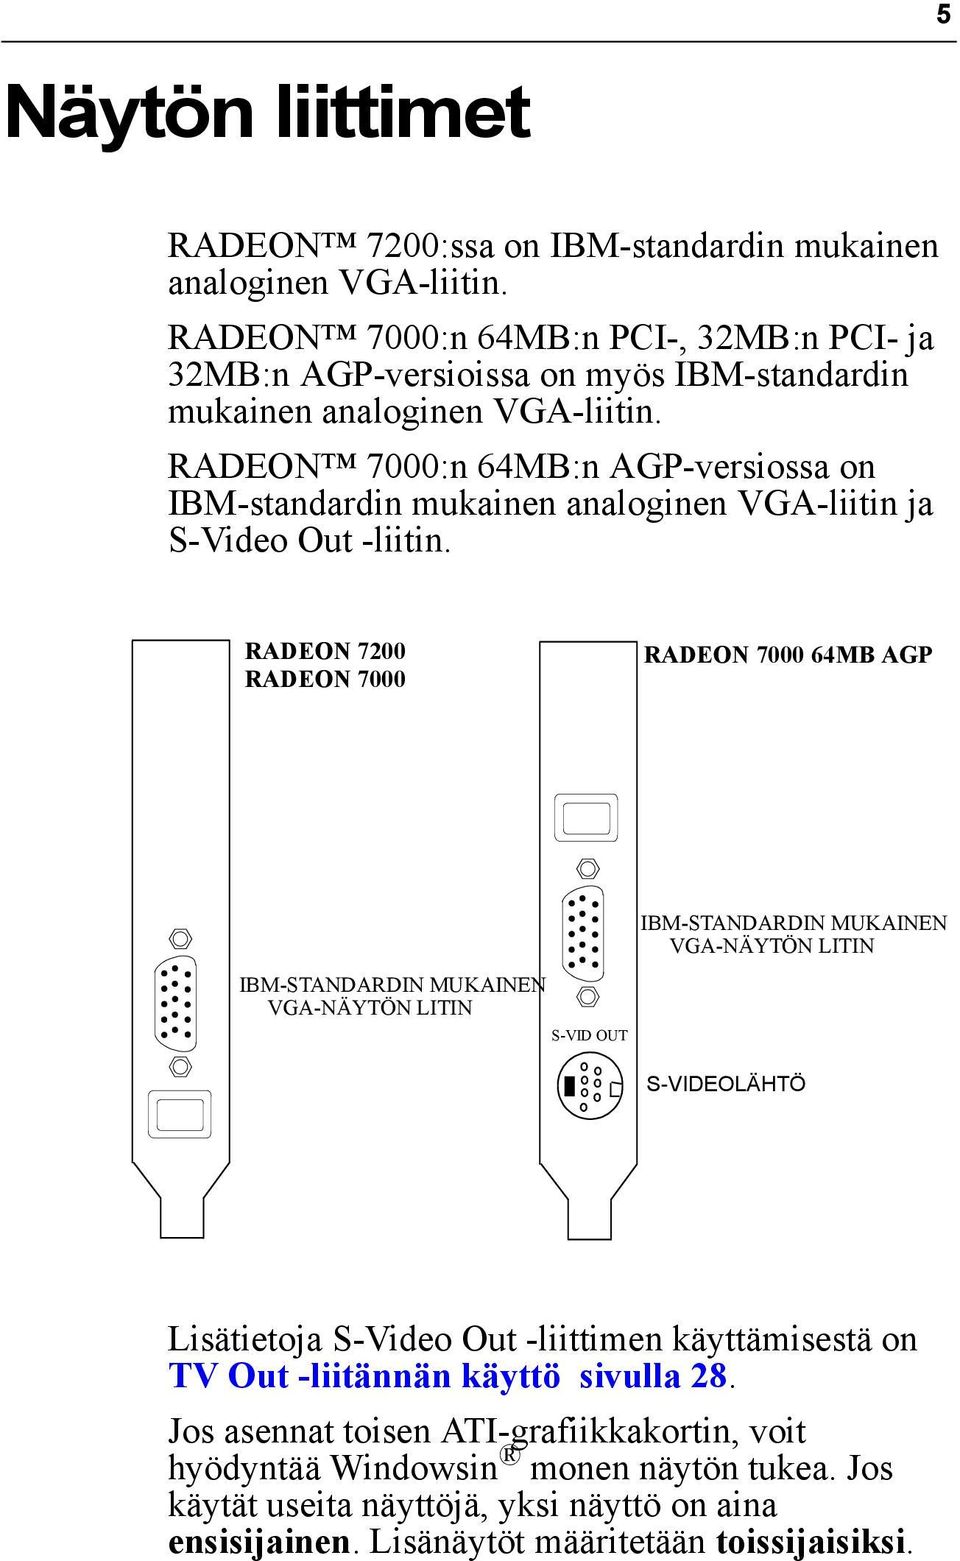 RADEON 7000:n 64MB:n AGP-versiossa on IBM-standardin mukainen analoginen VGA-liitin ja S-Video Out -liitin.